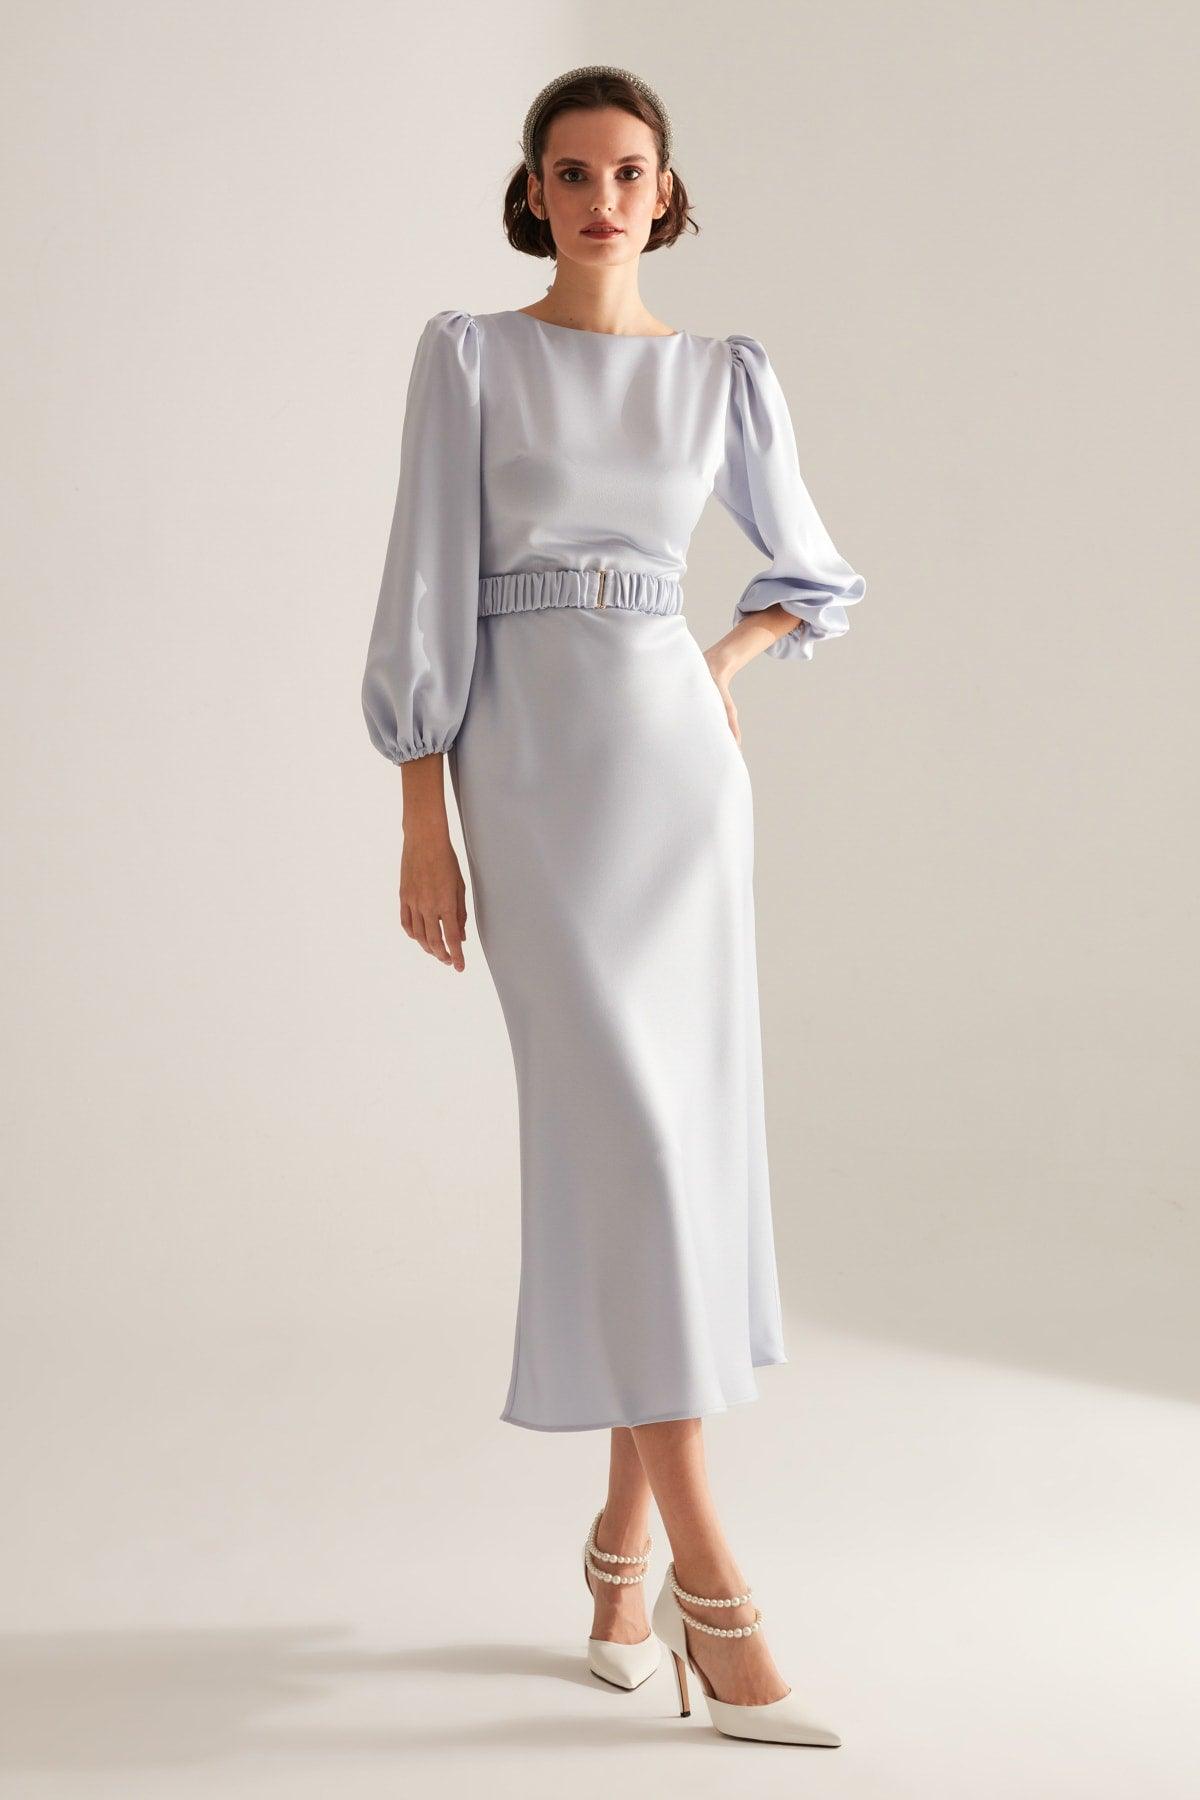 Heleny Special Design Light Blue Engagement Dress - Swordslife